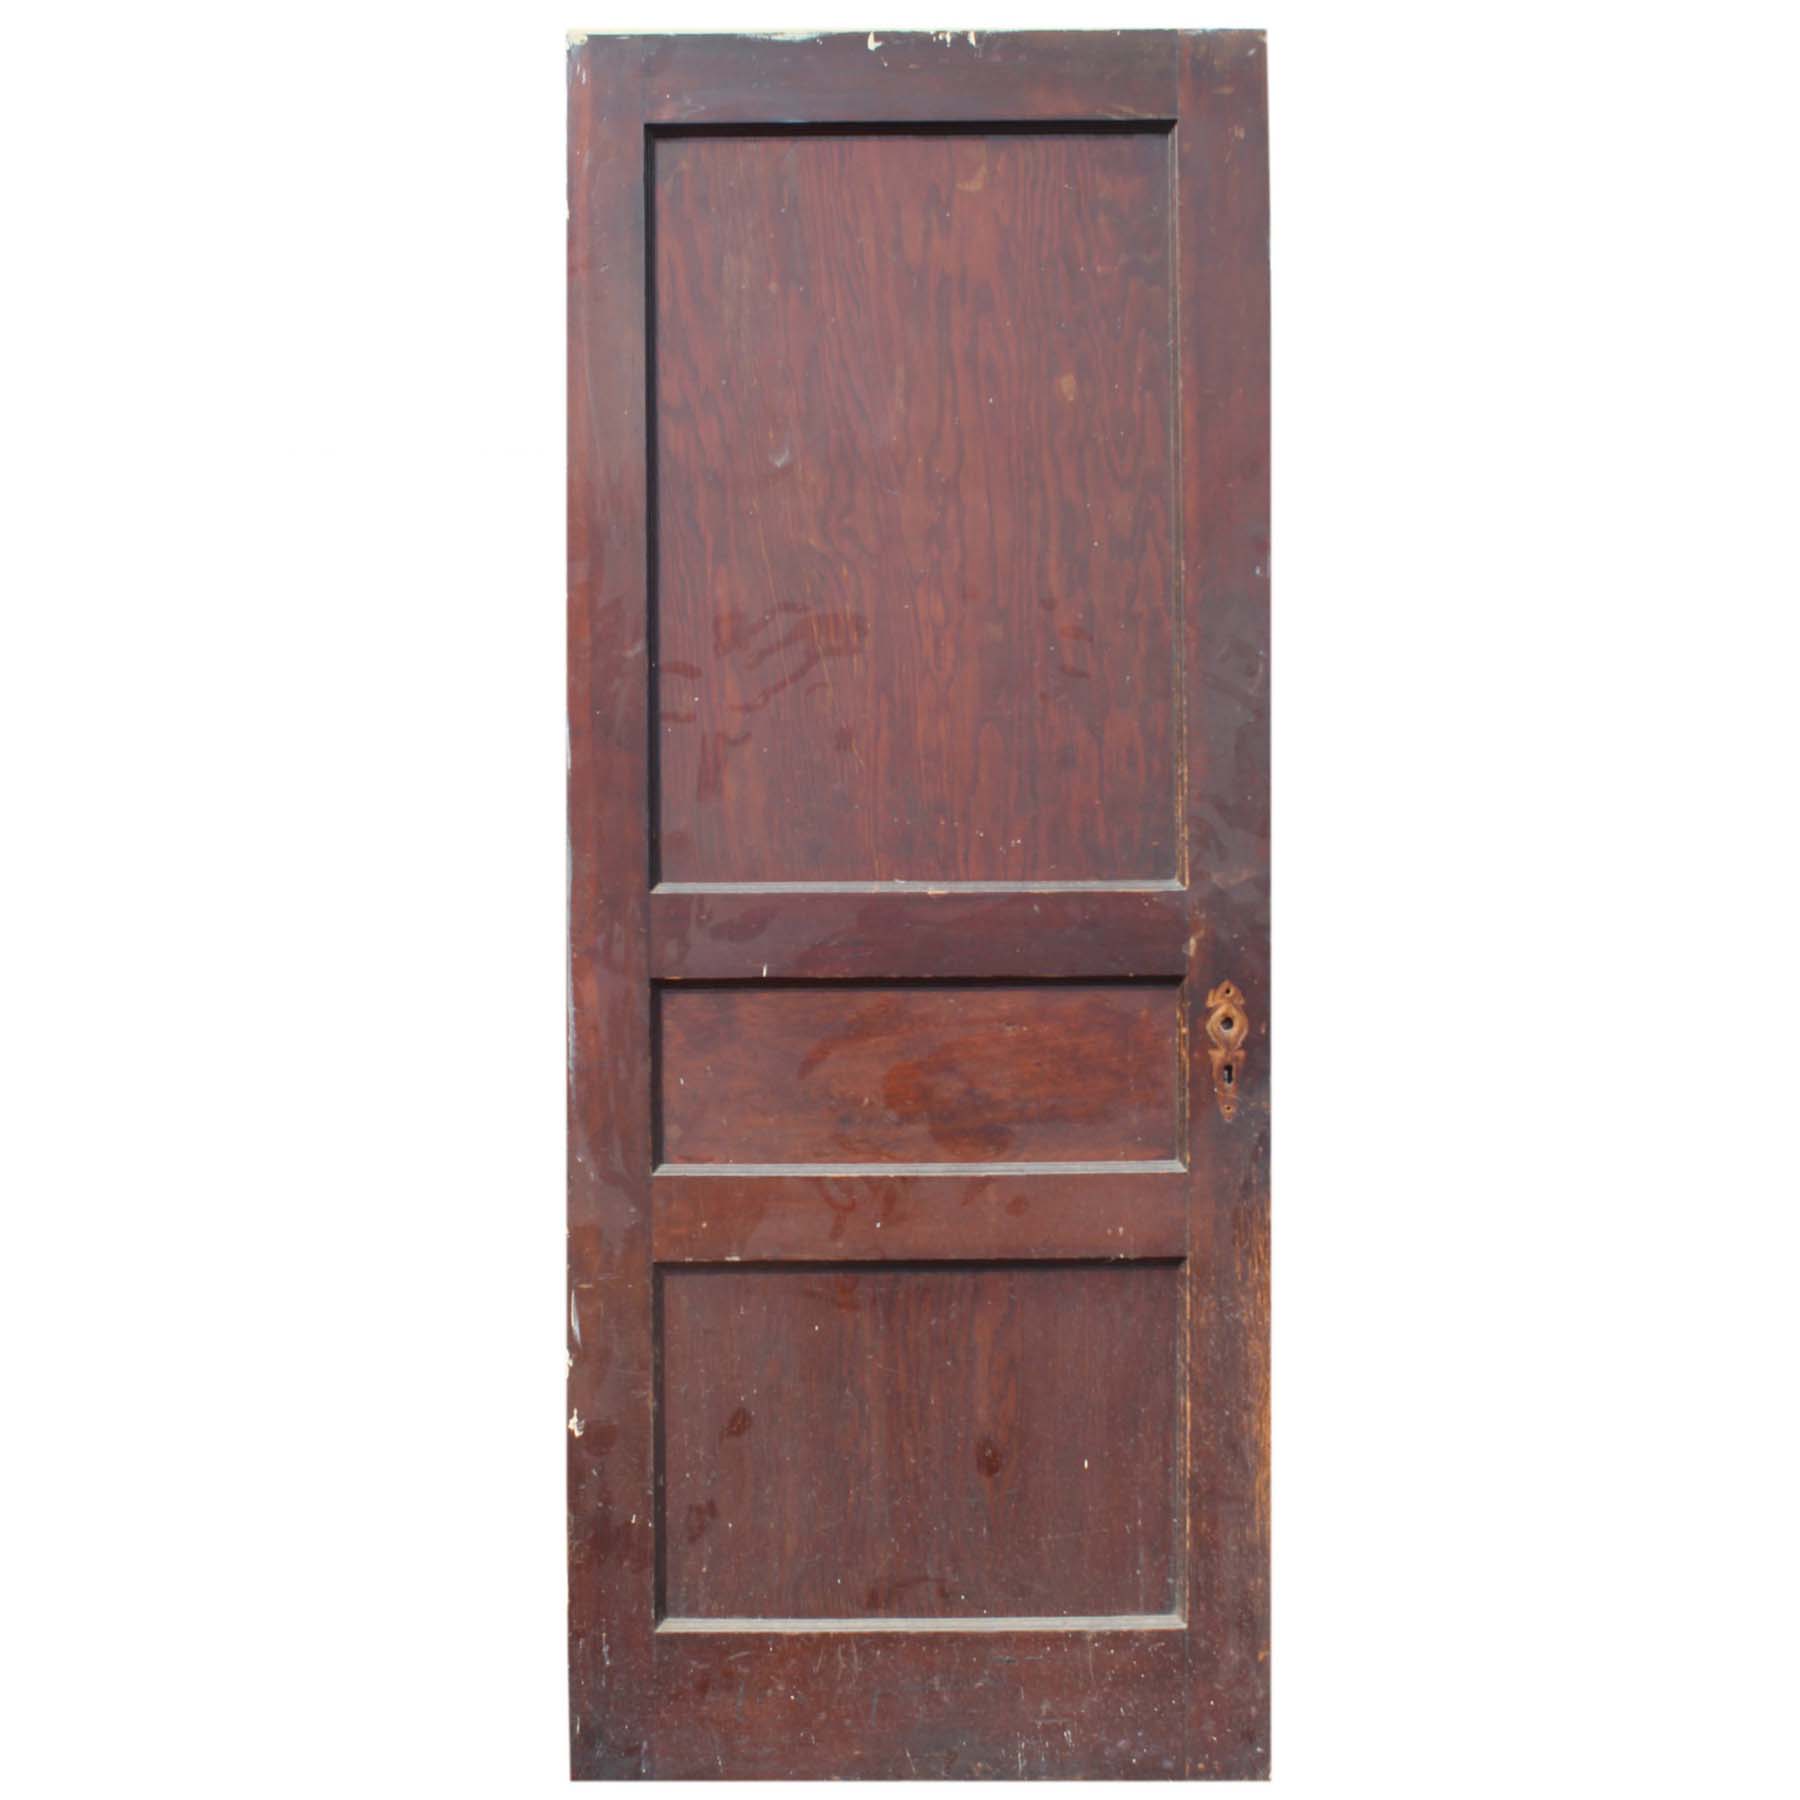 SOLD Antique 32” Three-Panel Solid Wood Door-71733